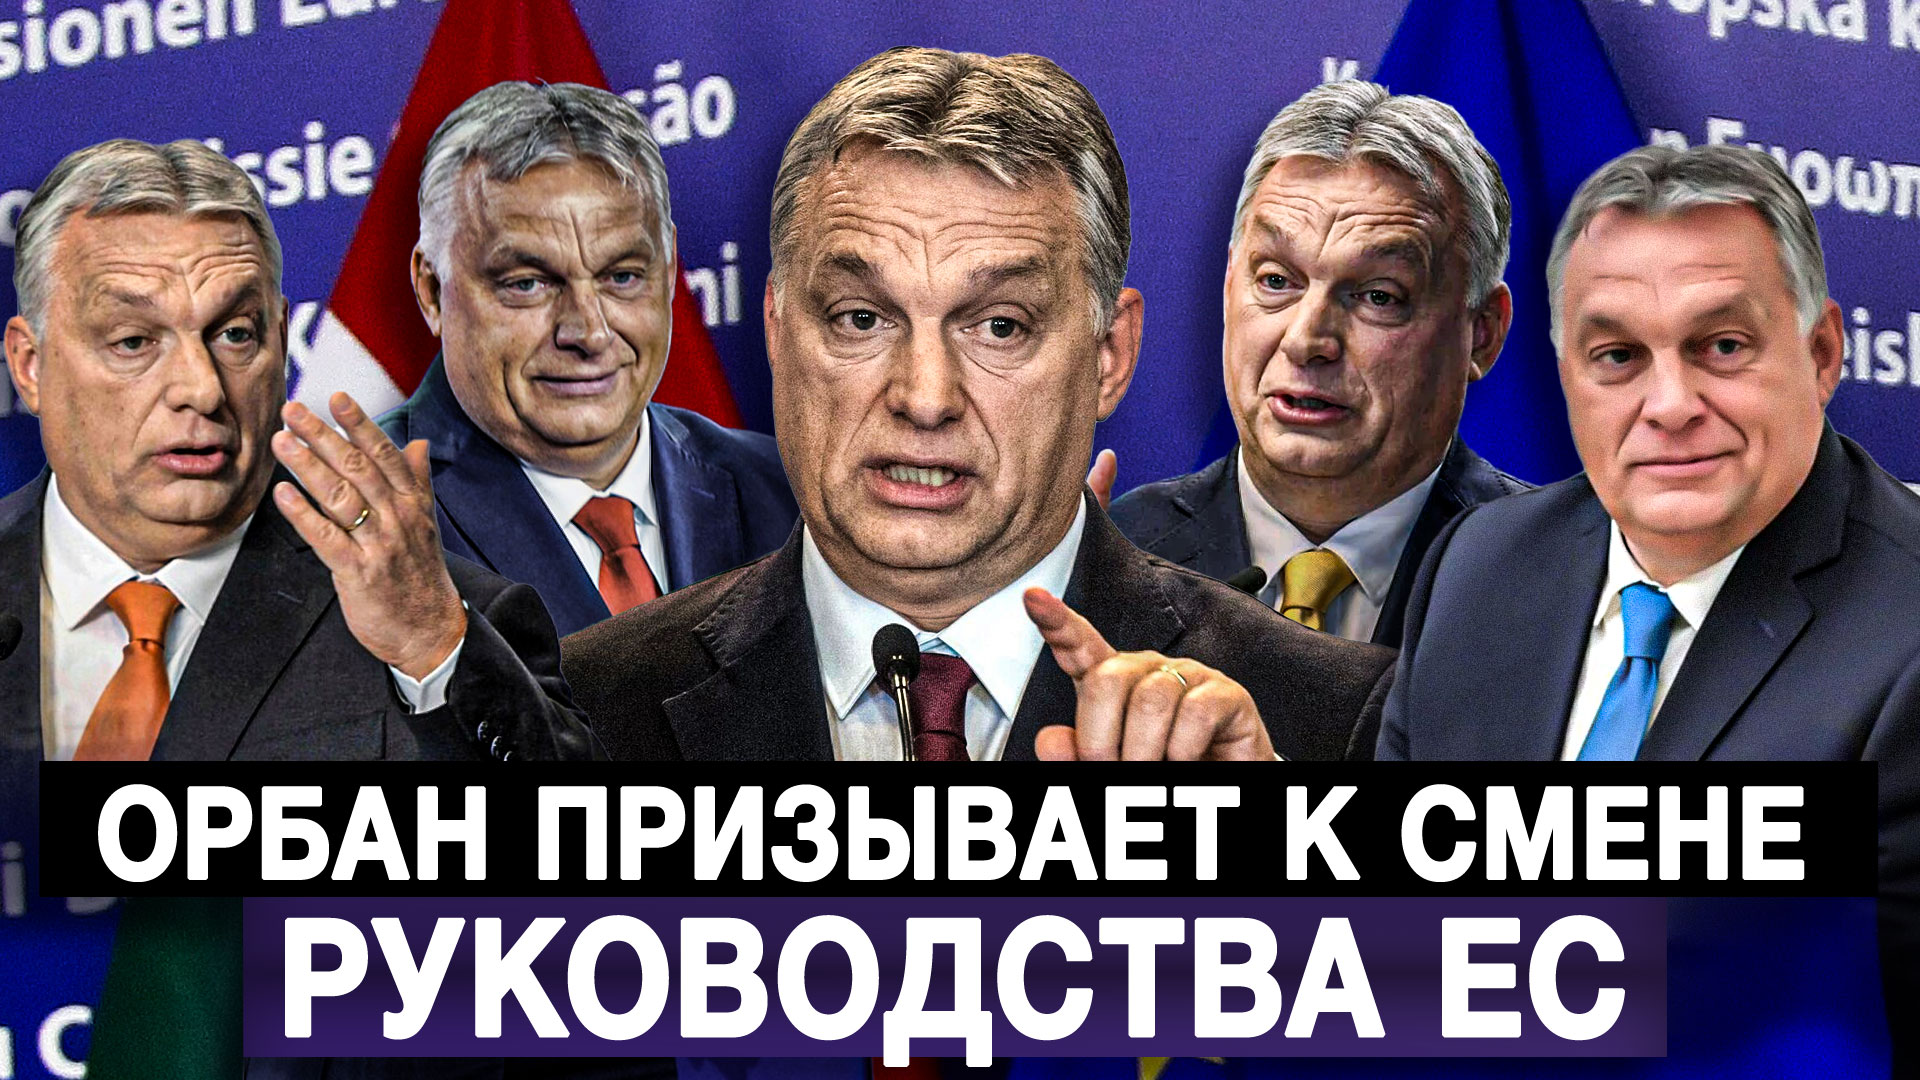 Орбан призывает к смене руководства ЕС